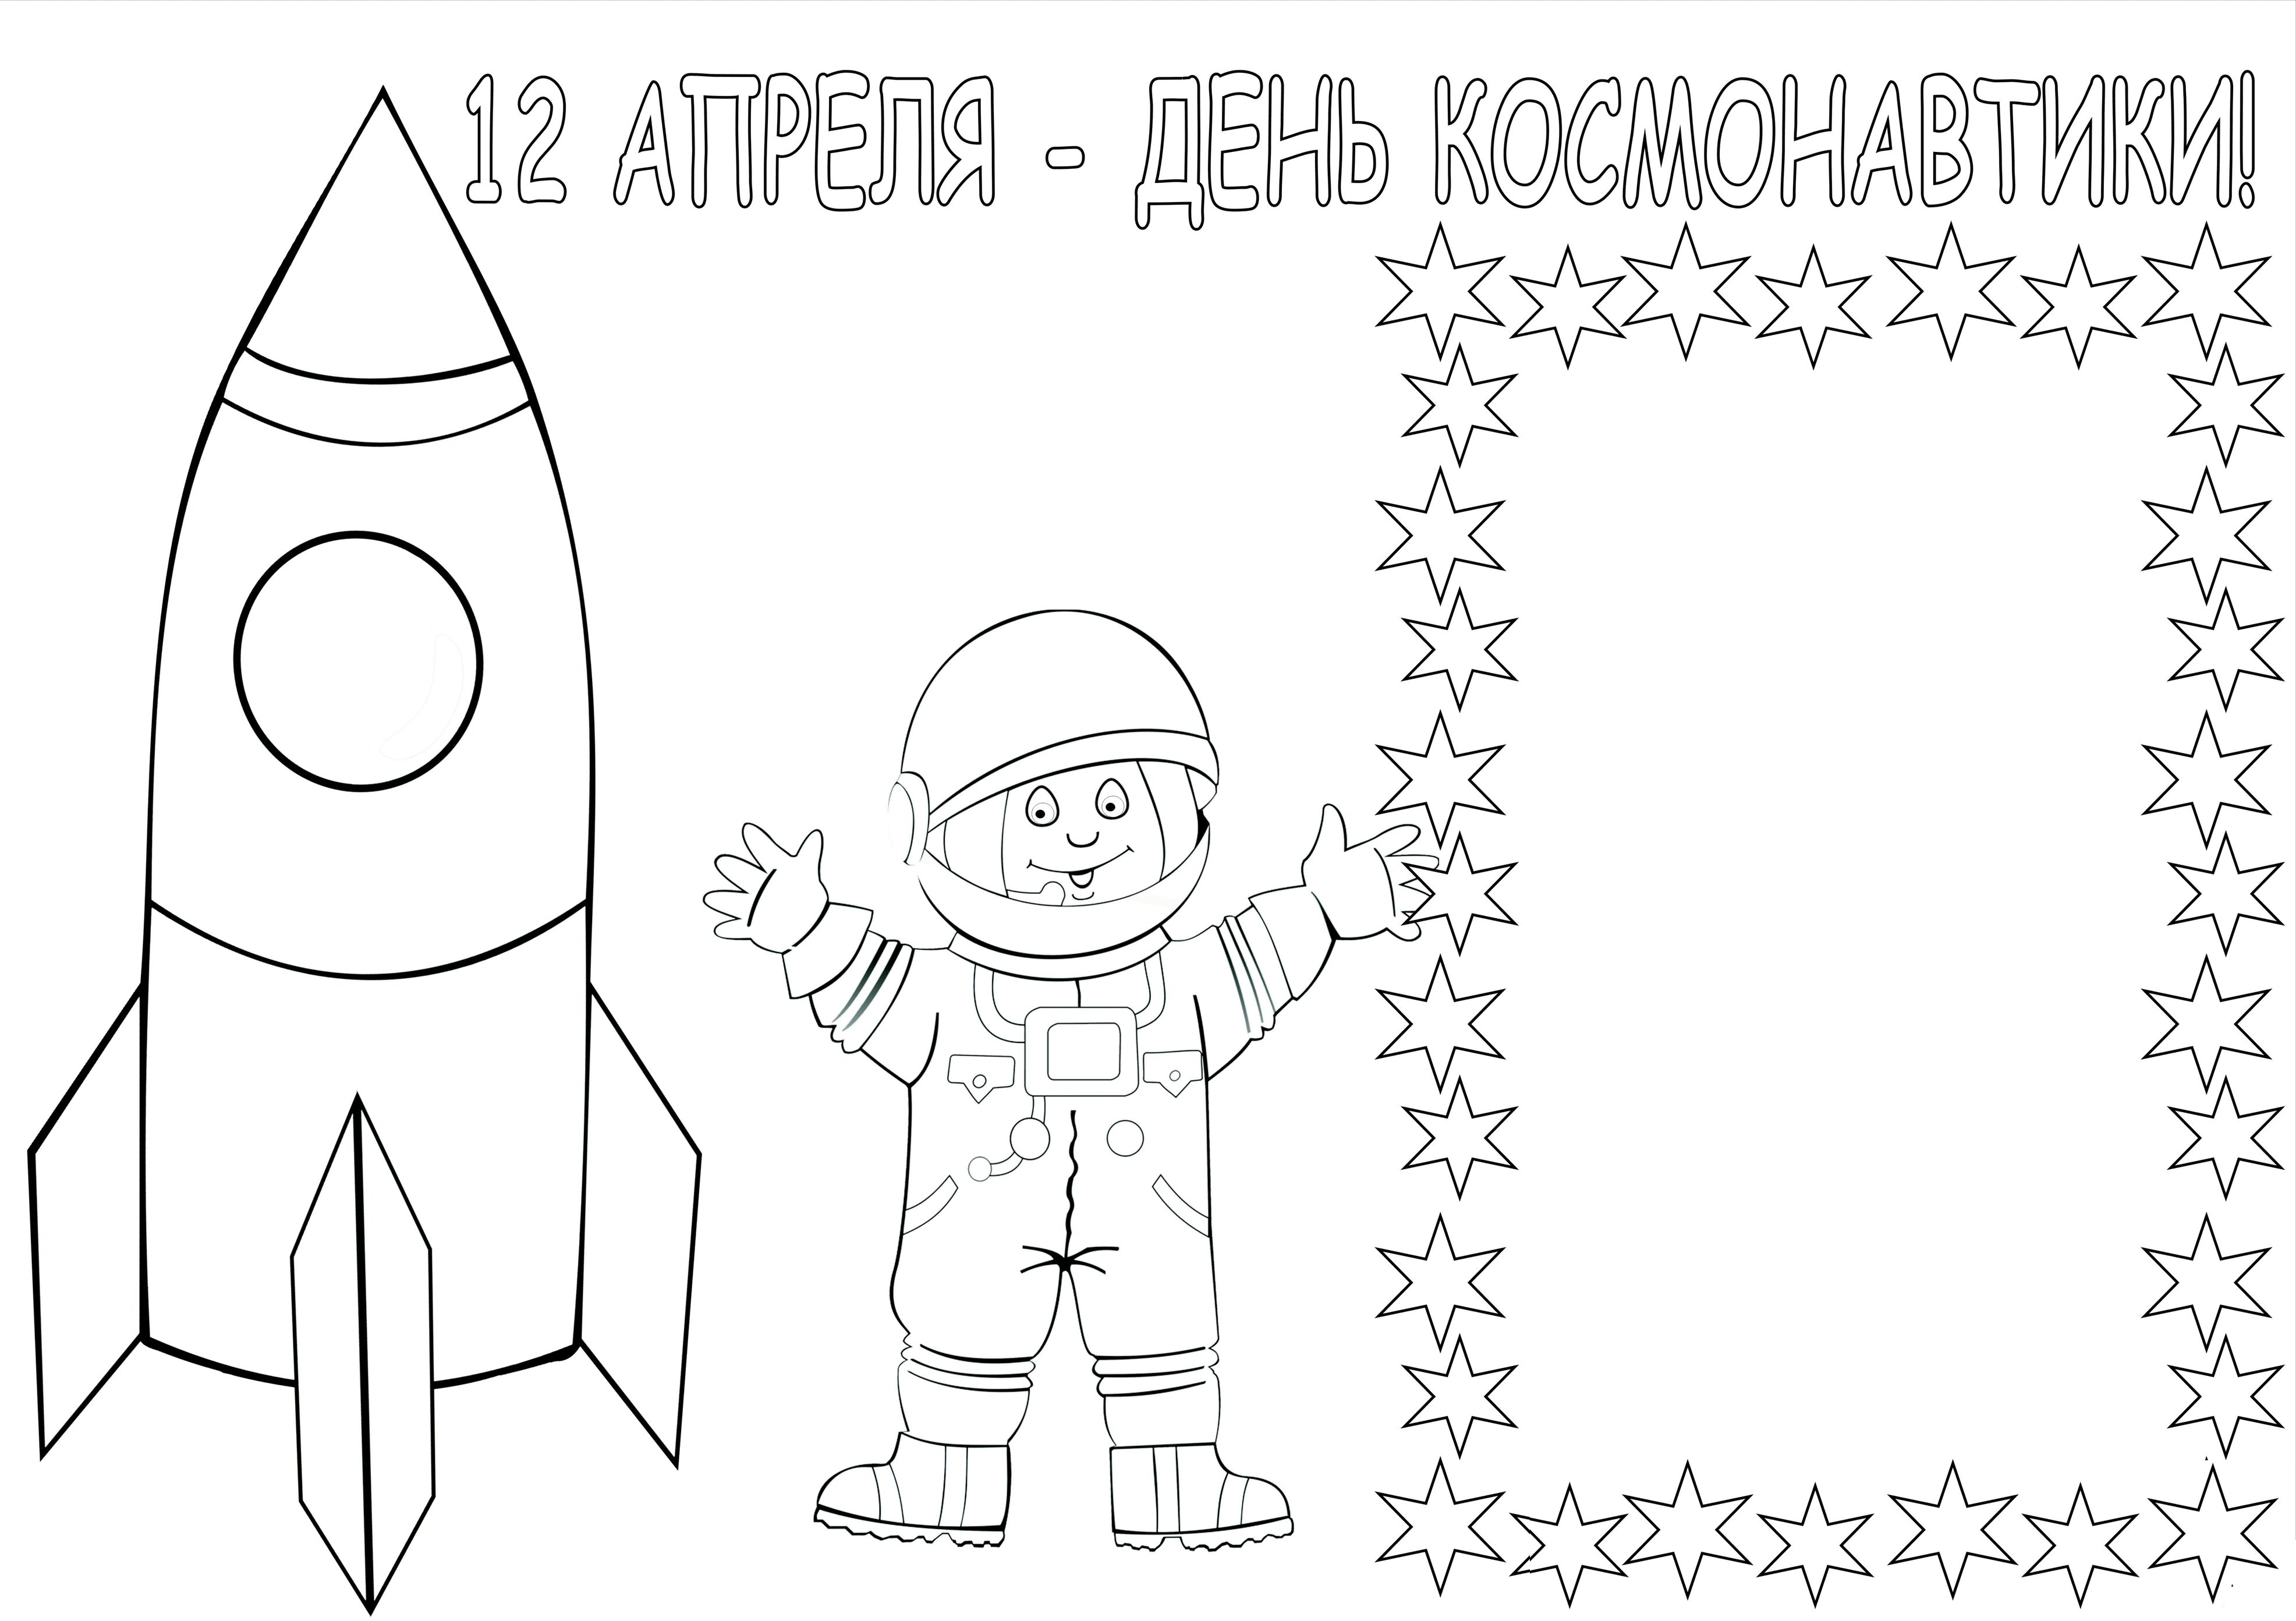 Простой рисунок на день космонавтики. Рисунок ко Дню космонавтики. Космос раскраска для детей. Рисунок ко Дню косионавтик. Раскраска день космонавтики для детей.